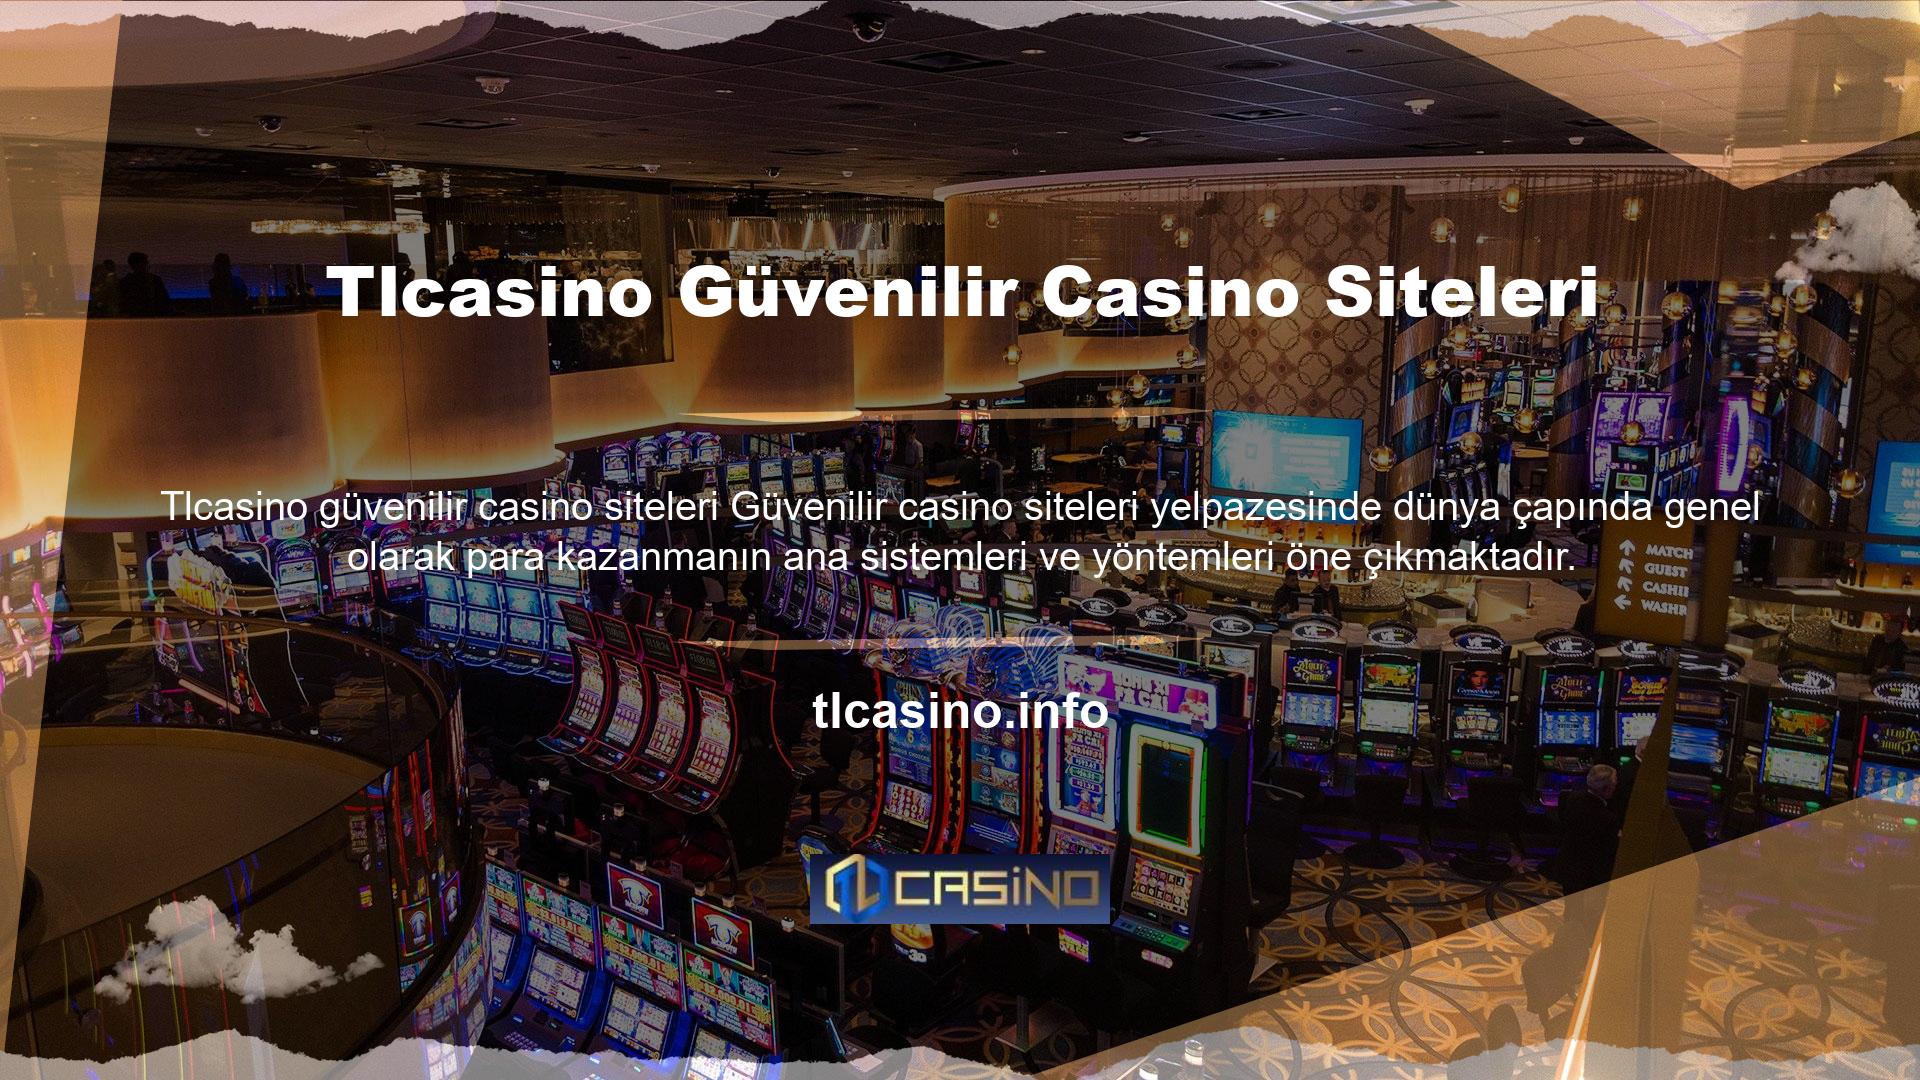 Tlcasino birçok bahis adresini güvenilir casino siteleri olarak adlandırabilir